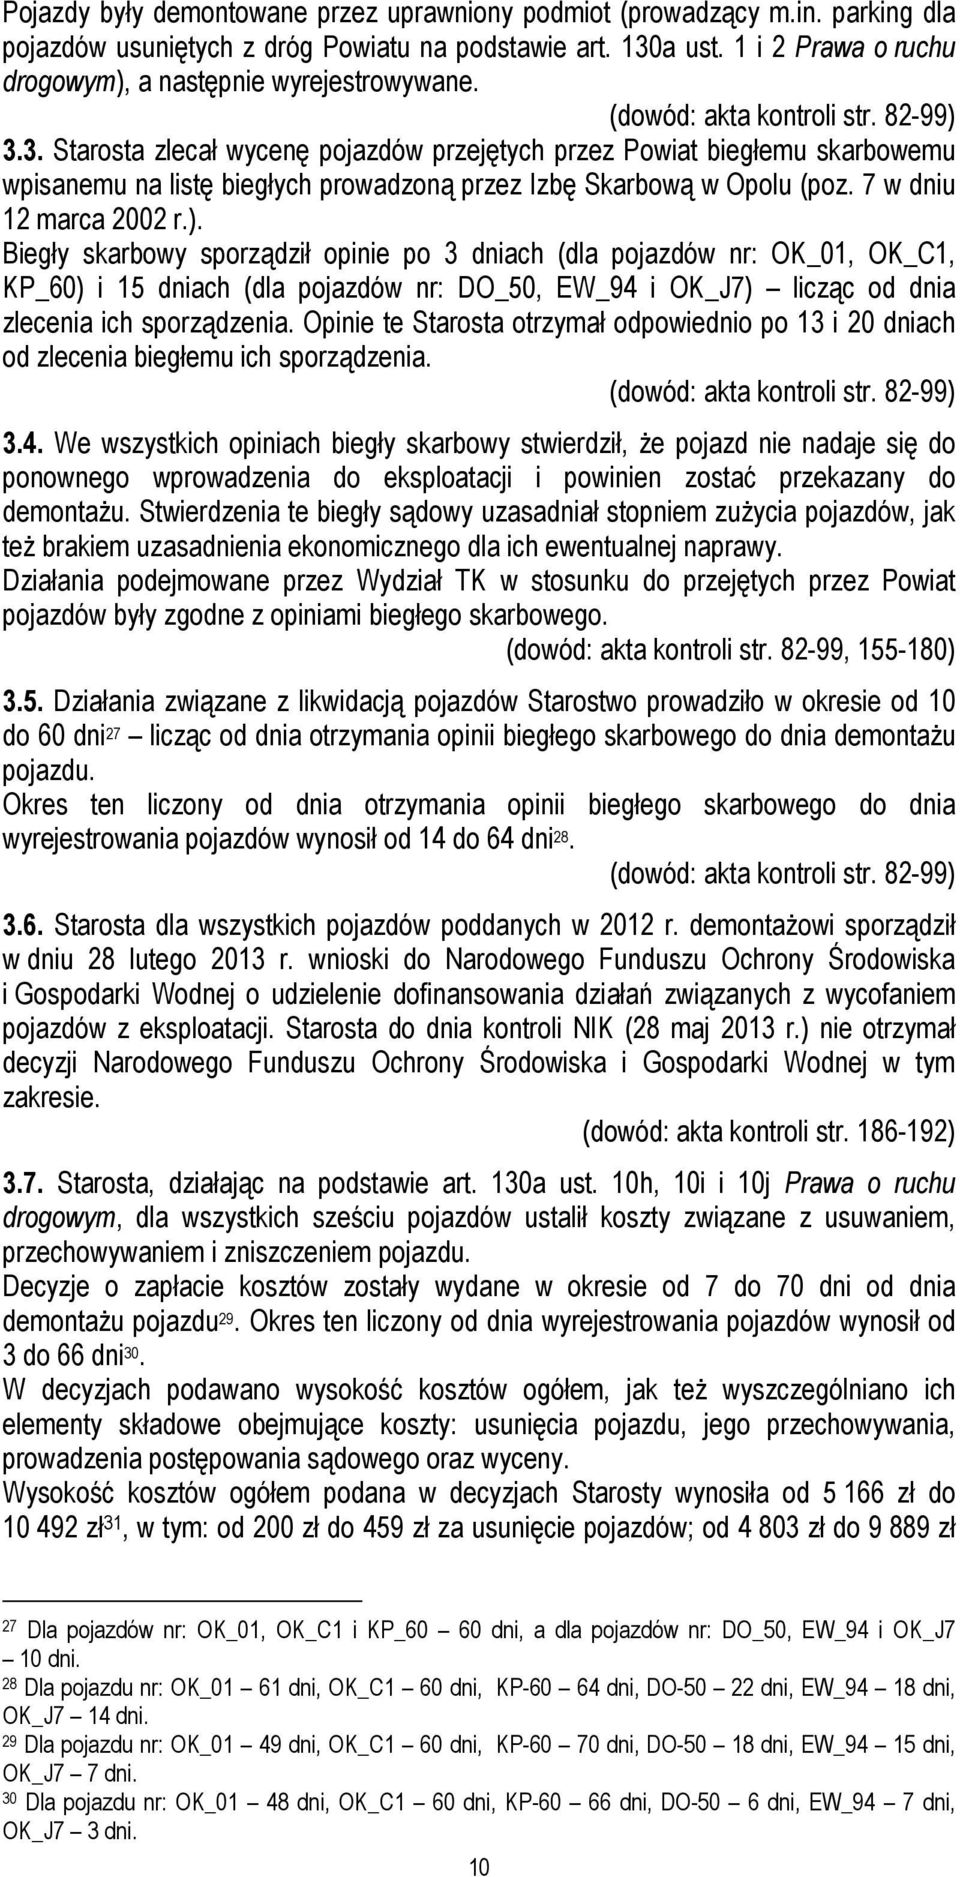 3. Starosta zlecał wycenę pojazdów przejętych przez Powiat biegłemu skarbowemu wpisanemu na listę biegłych prowadzoną przez Izbę Skarbową w Opolu (poz. 7 w dniu 12 marca 2002 r.).